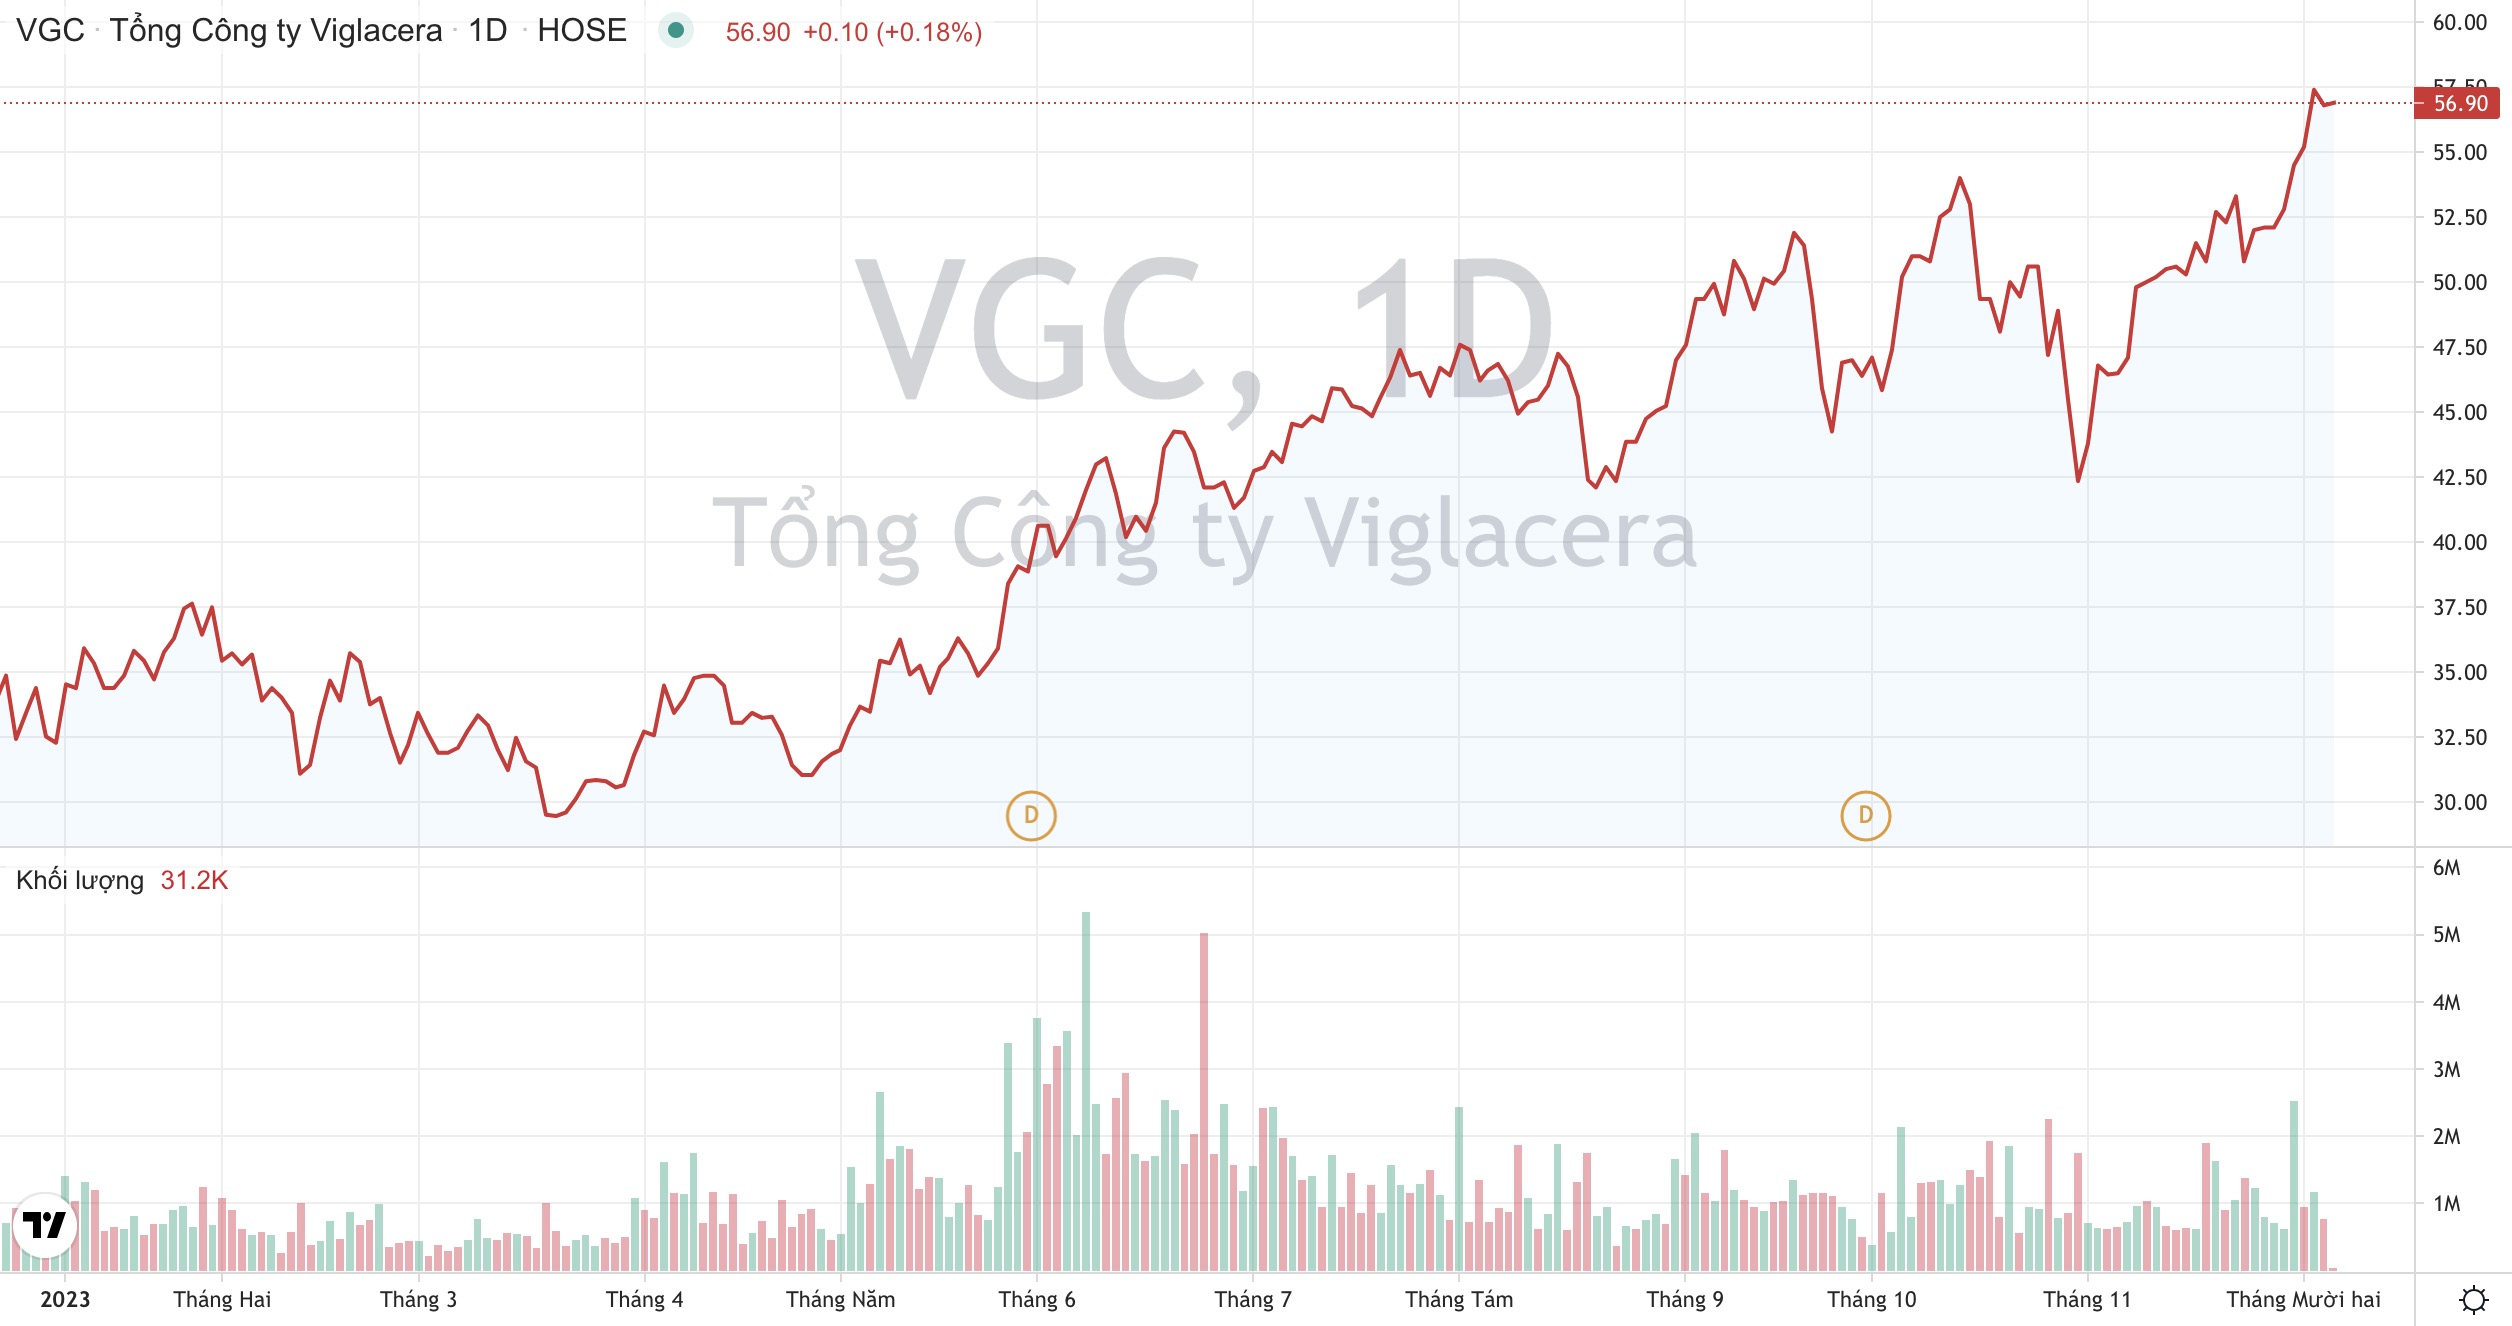 Giá cổ phiếu VGC Tổng công ty Viglacera